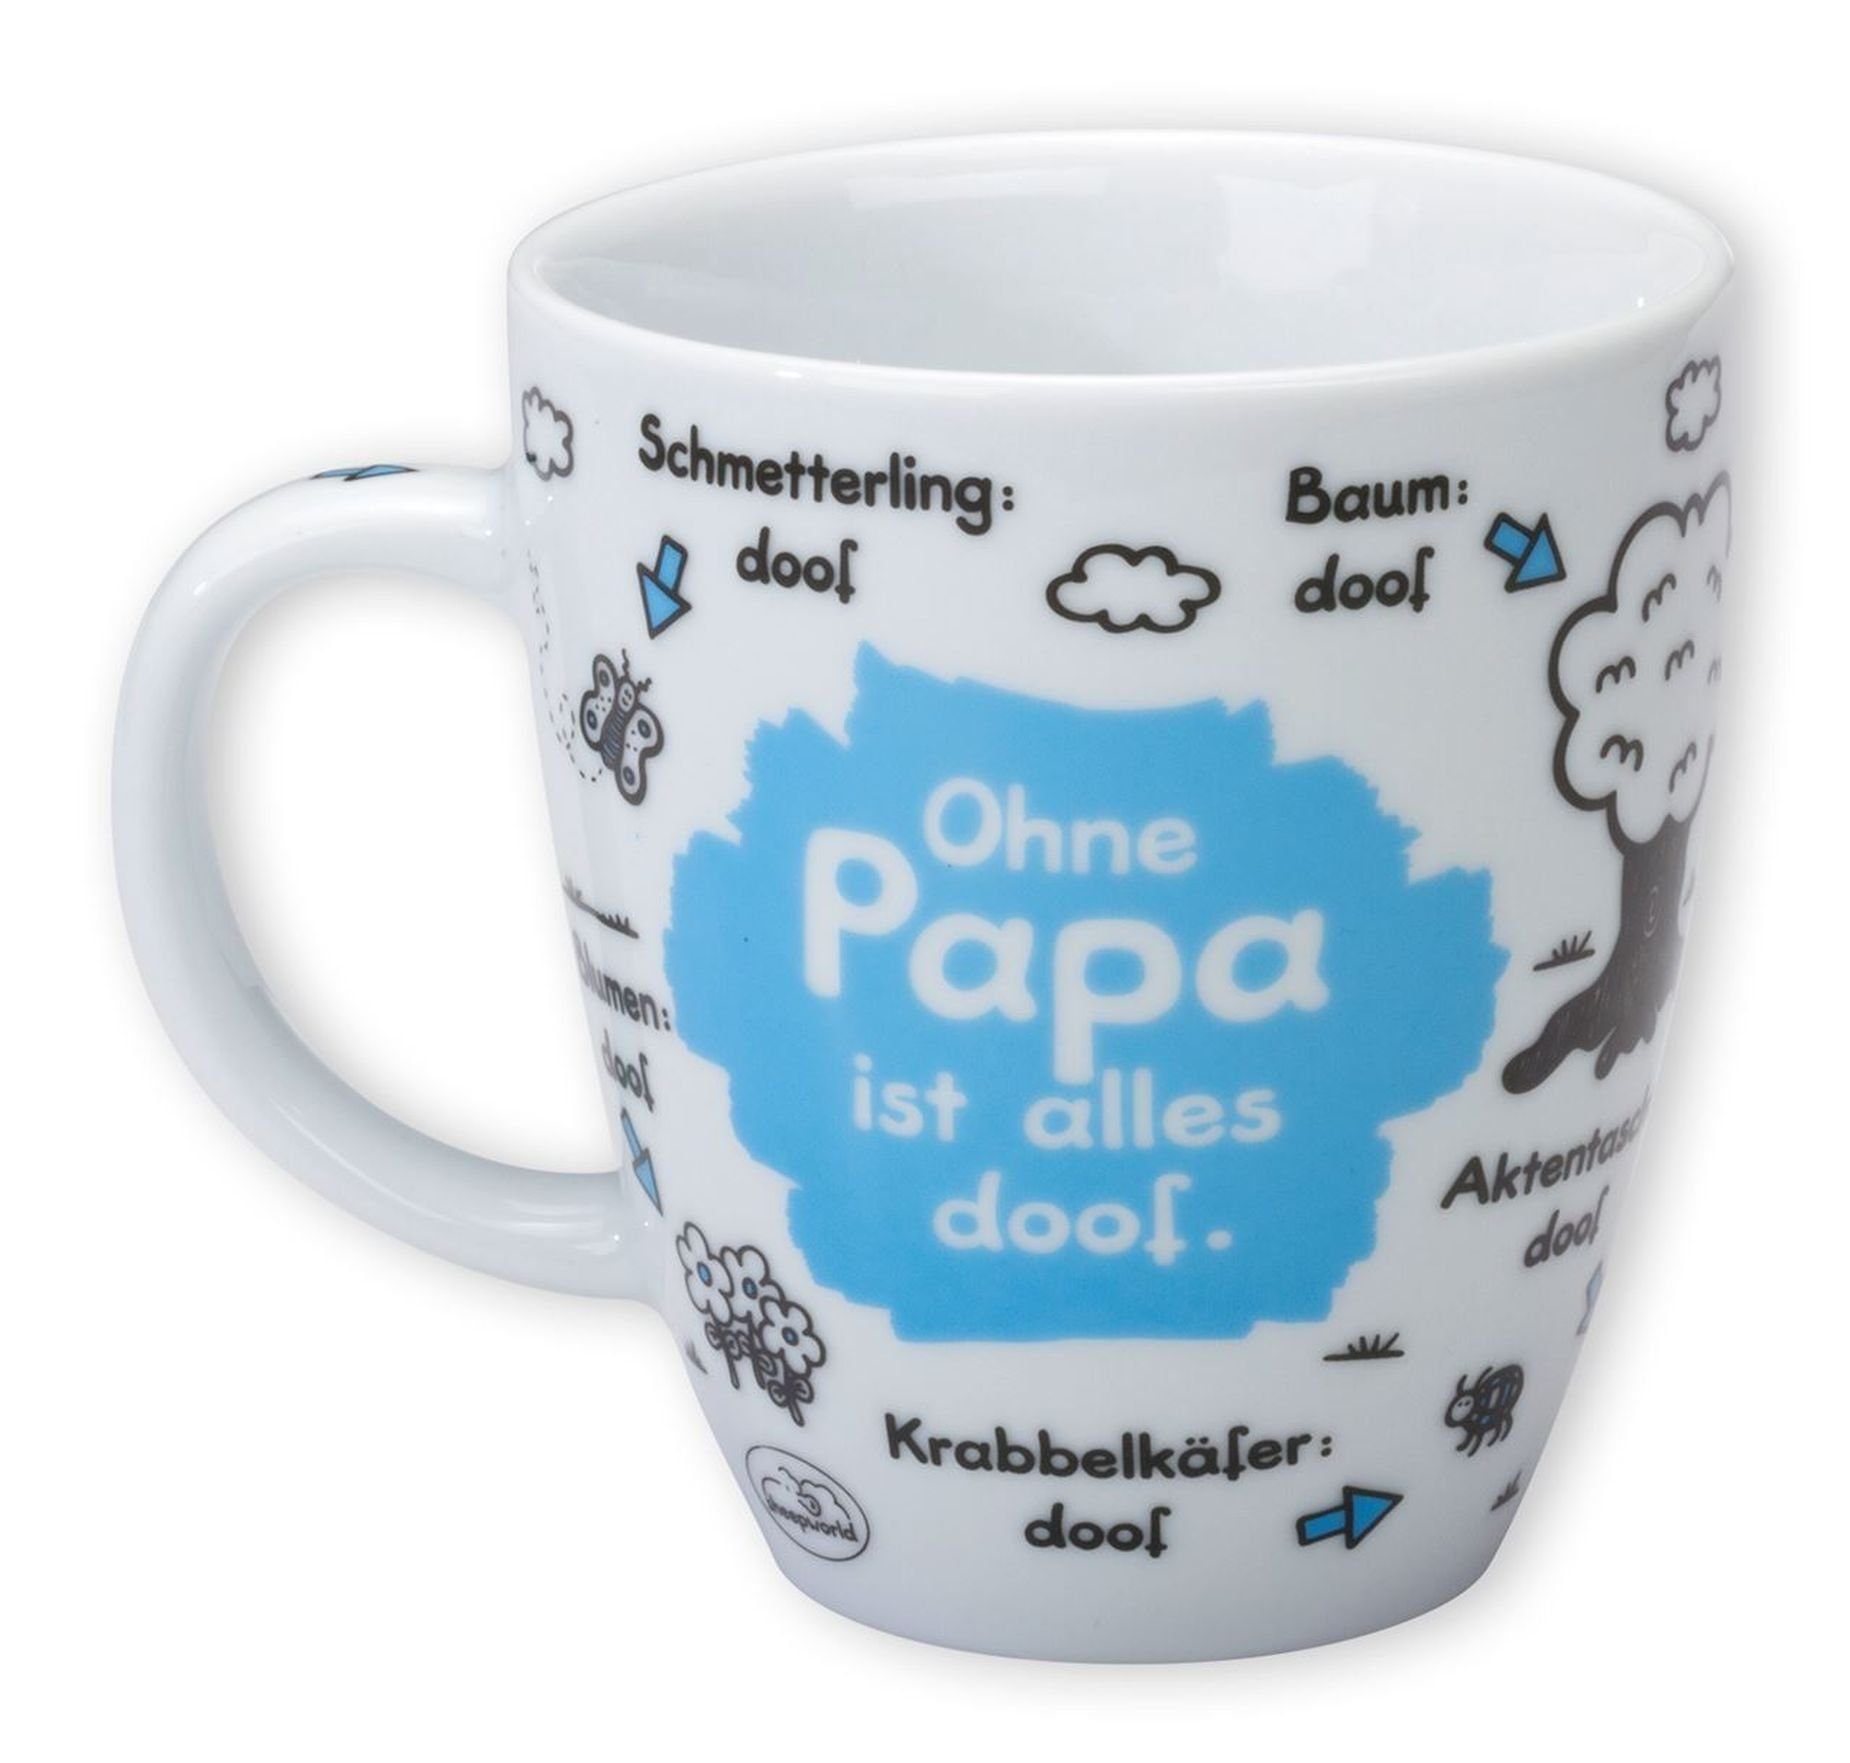 Papa alles "Ohne ODIAD ist Tasse Geschenk Sheepworld - Tasse Sheepworld 0,5l doof" ...